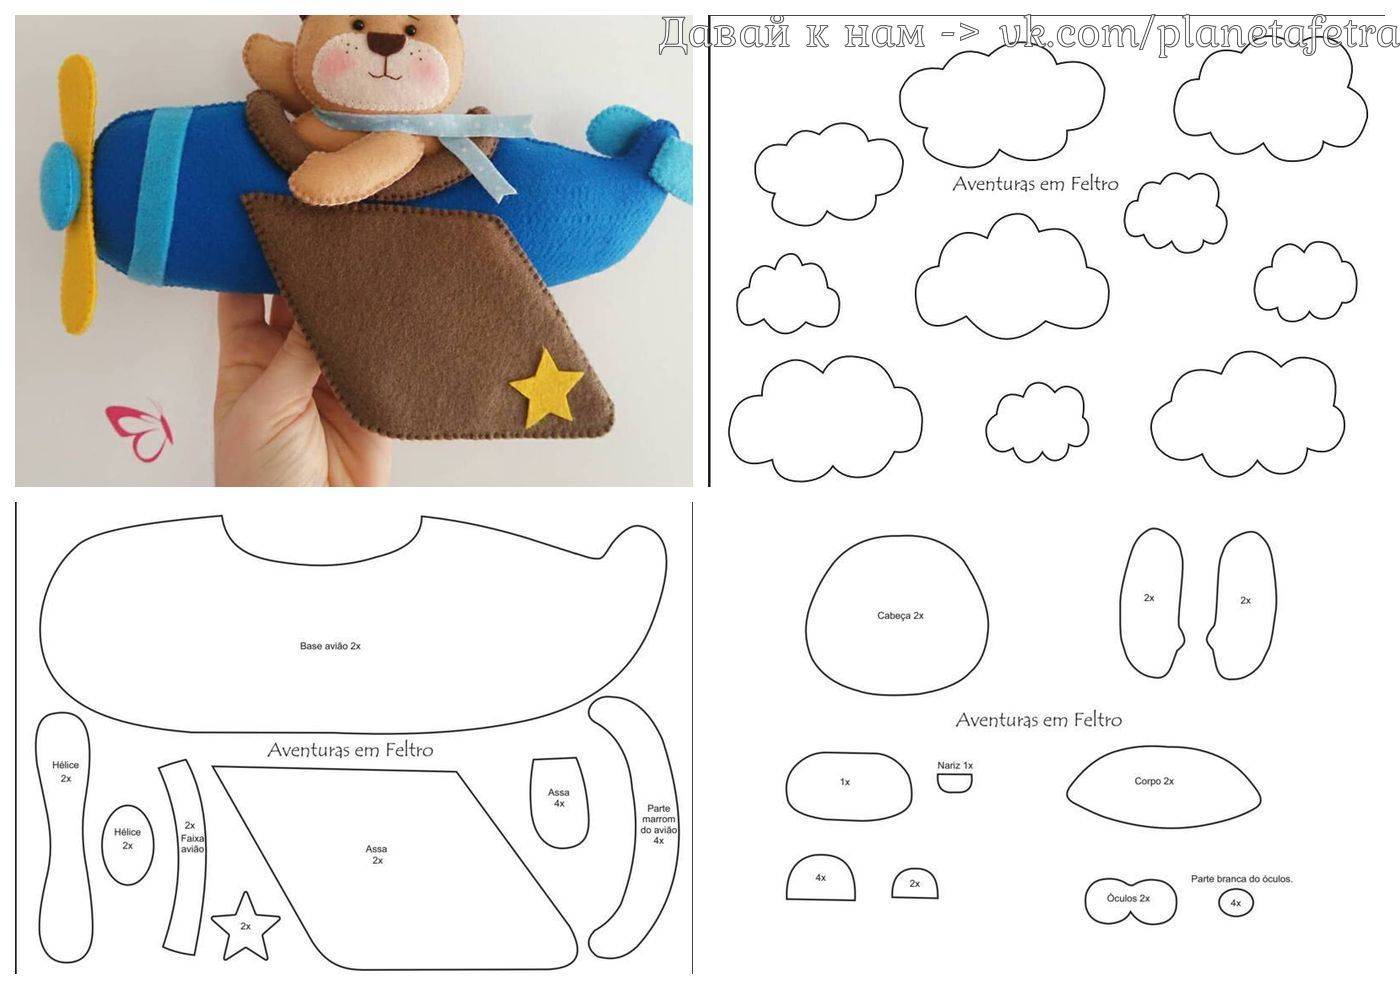 Как сделать мобиль на детскую кроватку своими руками из фетра и других материалов, выкройки, схемы, фото и видео